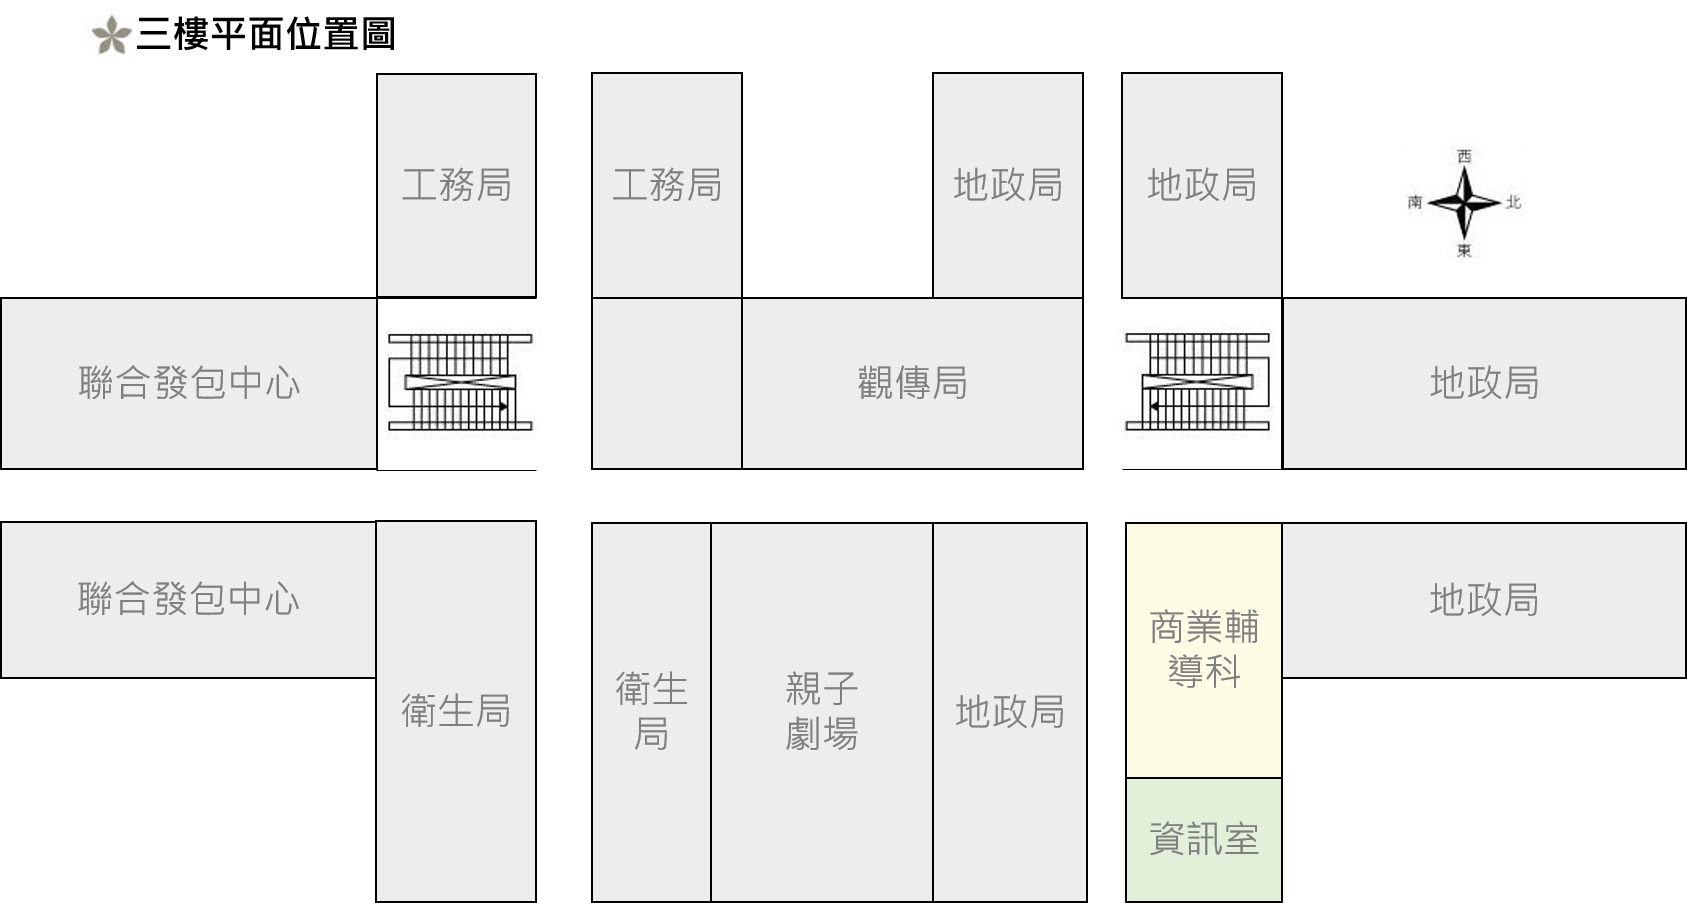 臺北市商業處三樓平面位置圖